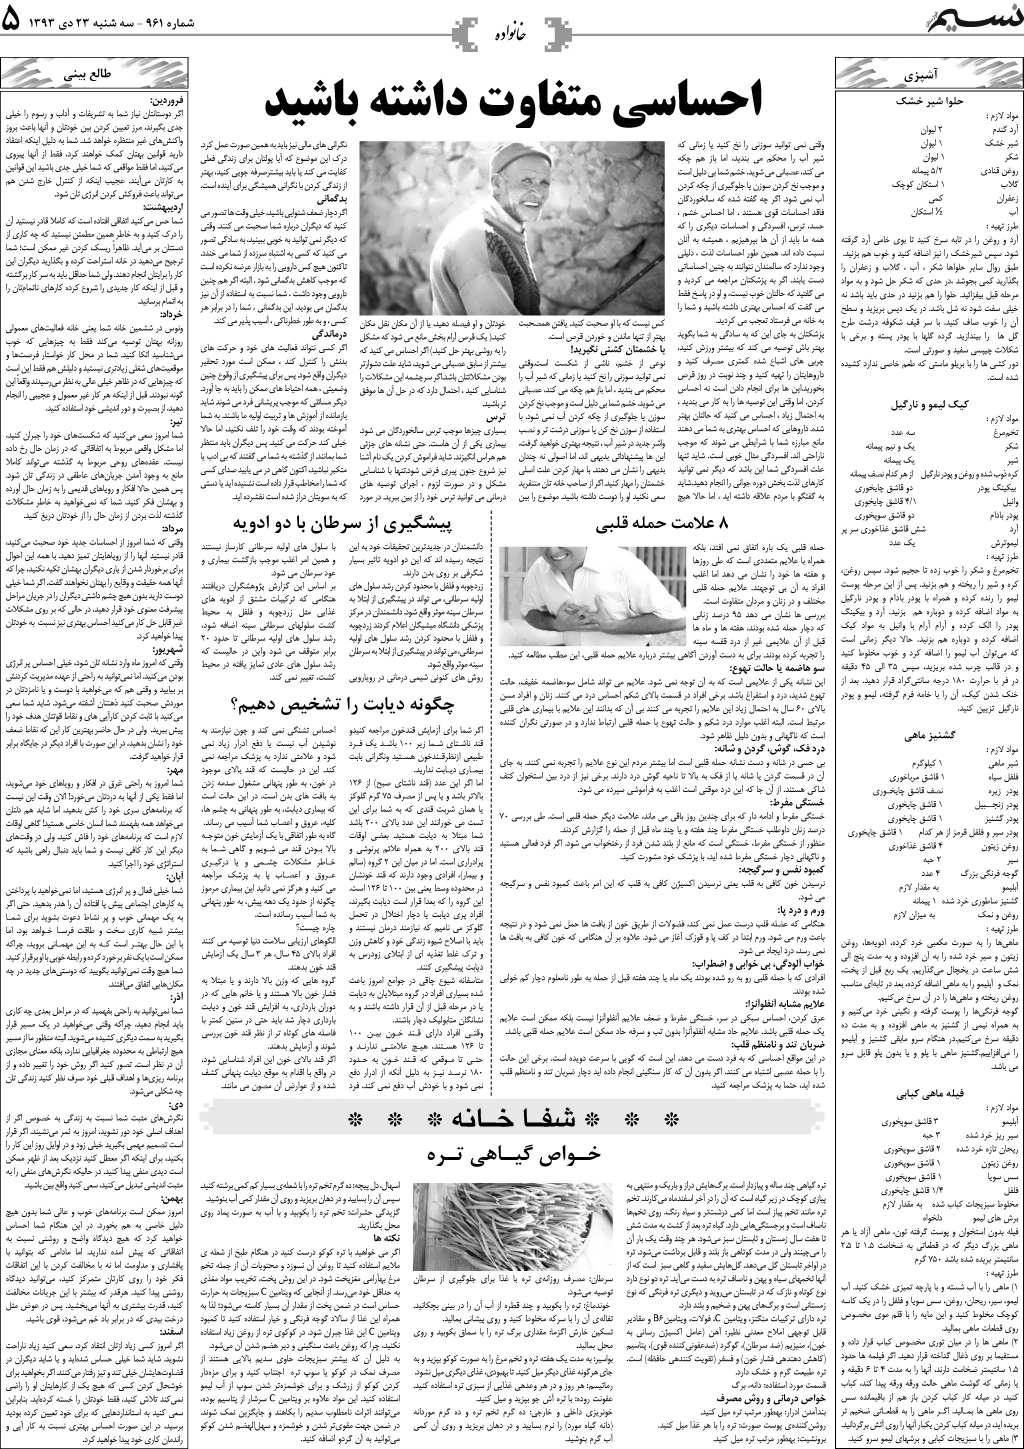 صفحه خانواده روزنامه نسیم شماره 961